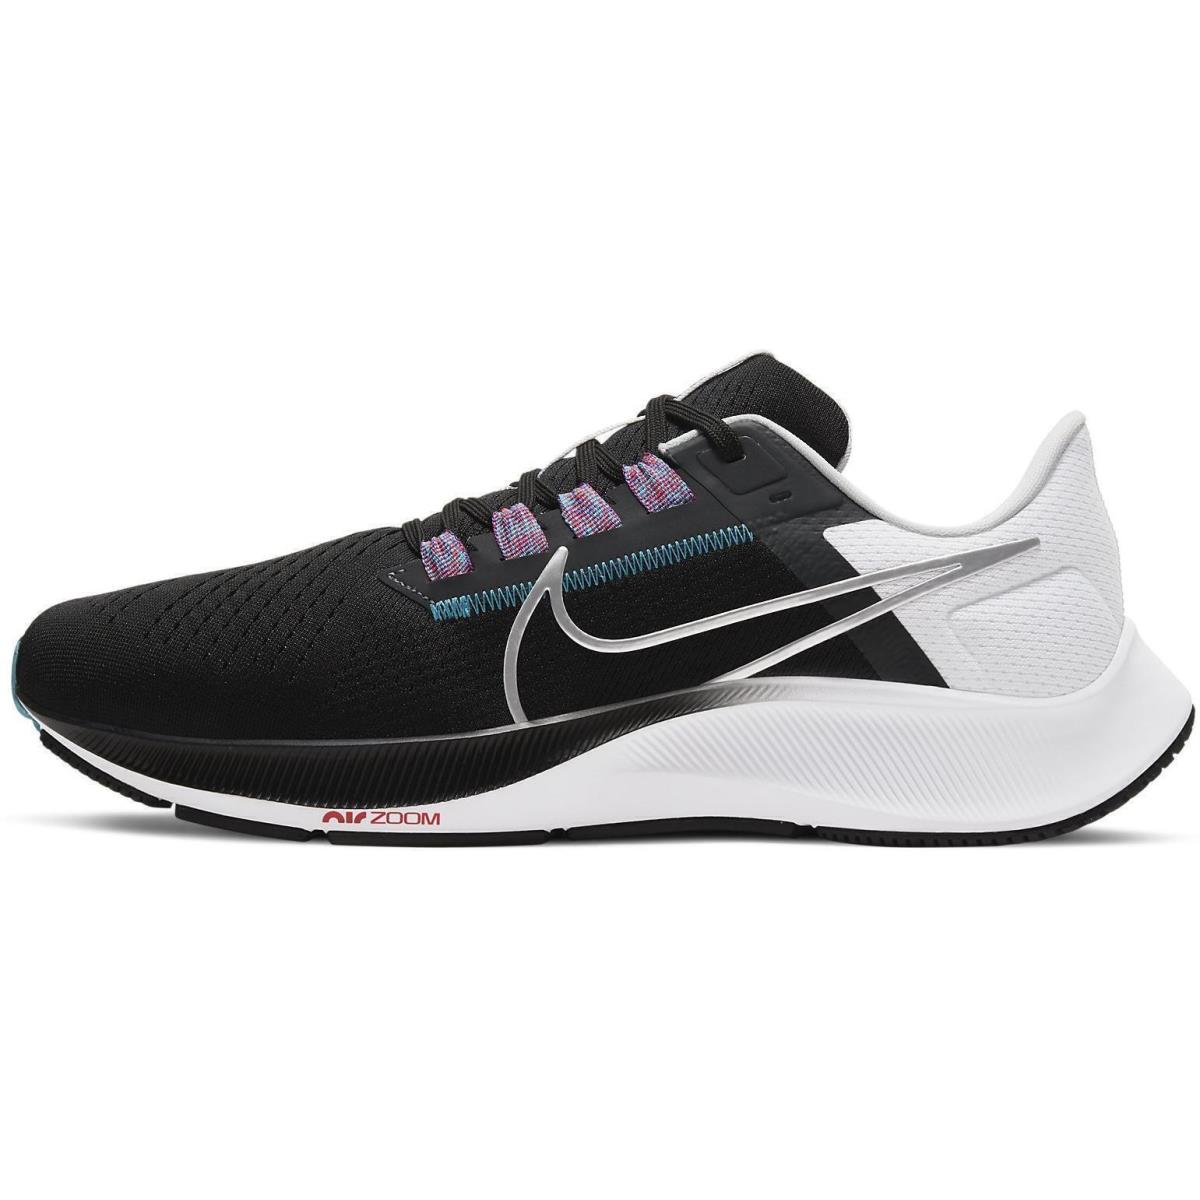 Nike Mens Air Zoom Pegasus 38 Running Shoes CW7356 003 Box NO Lid - BLACK METALLIC SILVER WHITE